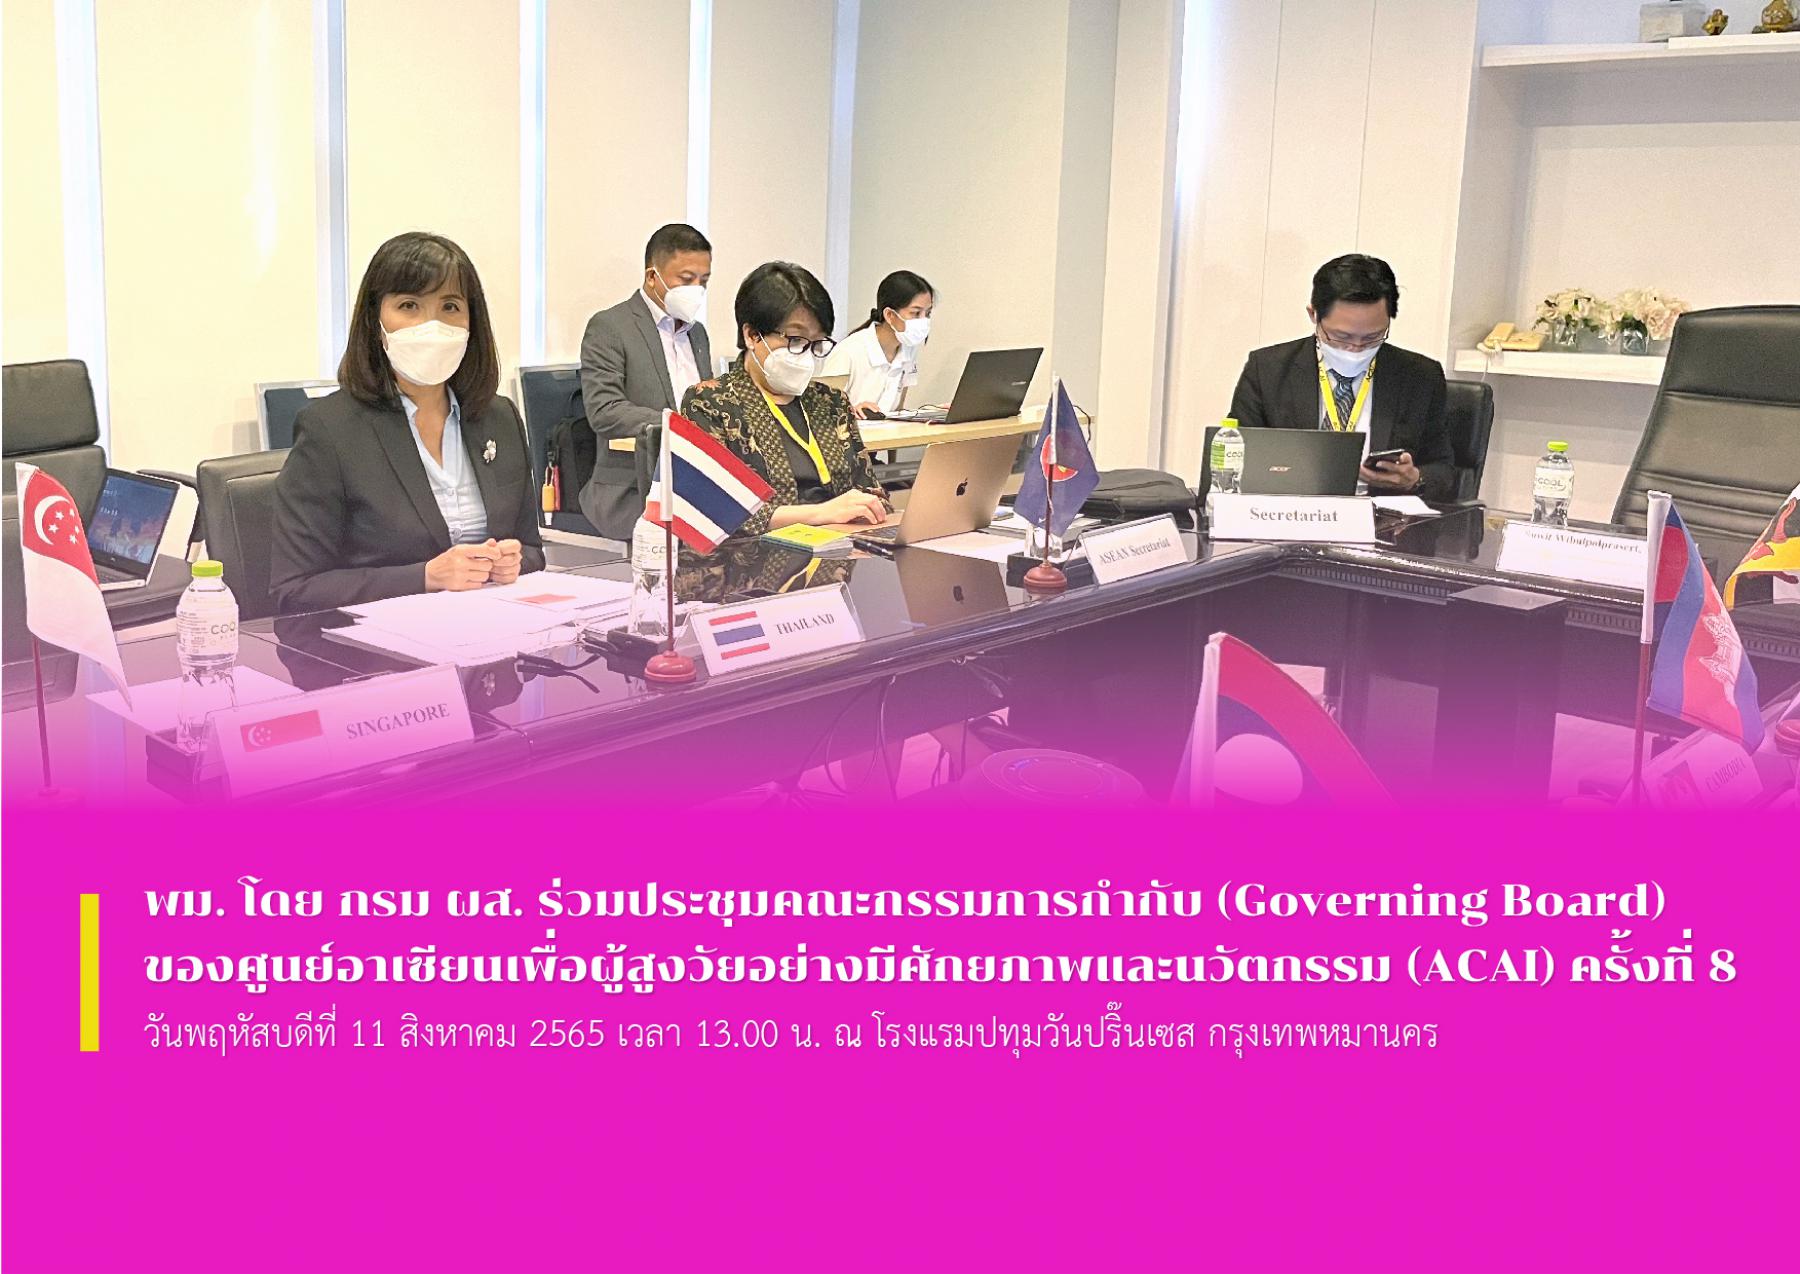 พม. โดย กรม ผส. ร่วมประชุมคณะกรรมการกำกับ (Governing Board) ของศูนย์อาเซียนเพื่อผู้สูงวัยอย่างมีศักยภาพและนวัตกรรม (ACAI) ครั้งที่ 8